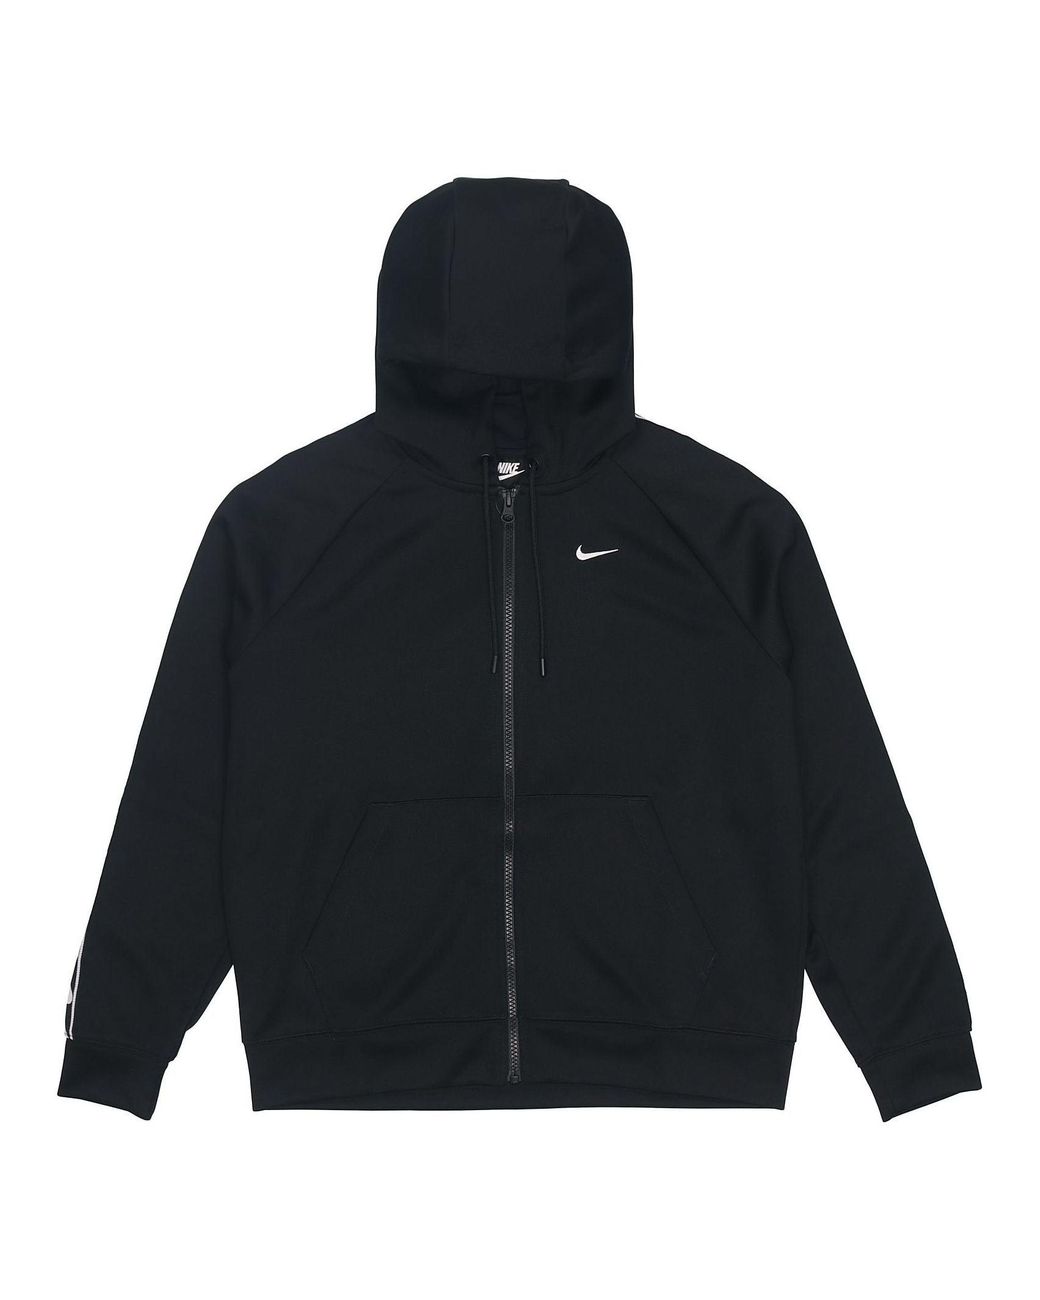 Nike Side Logo Zipper Hooded Jacket in Black | Lyst